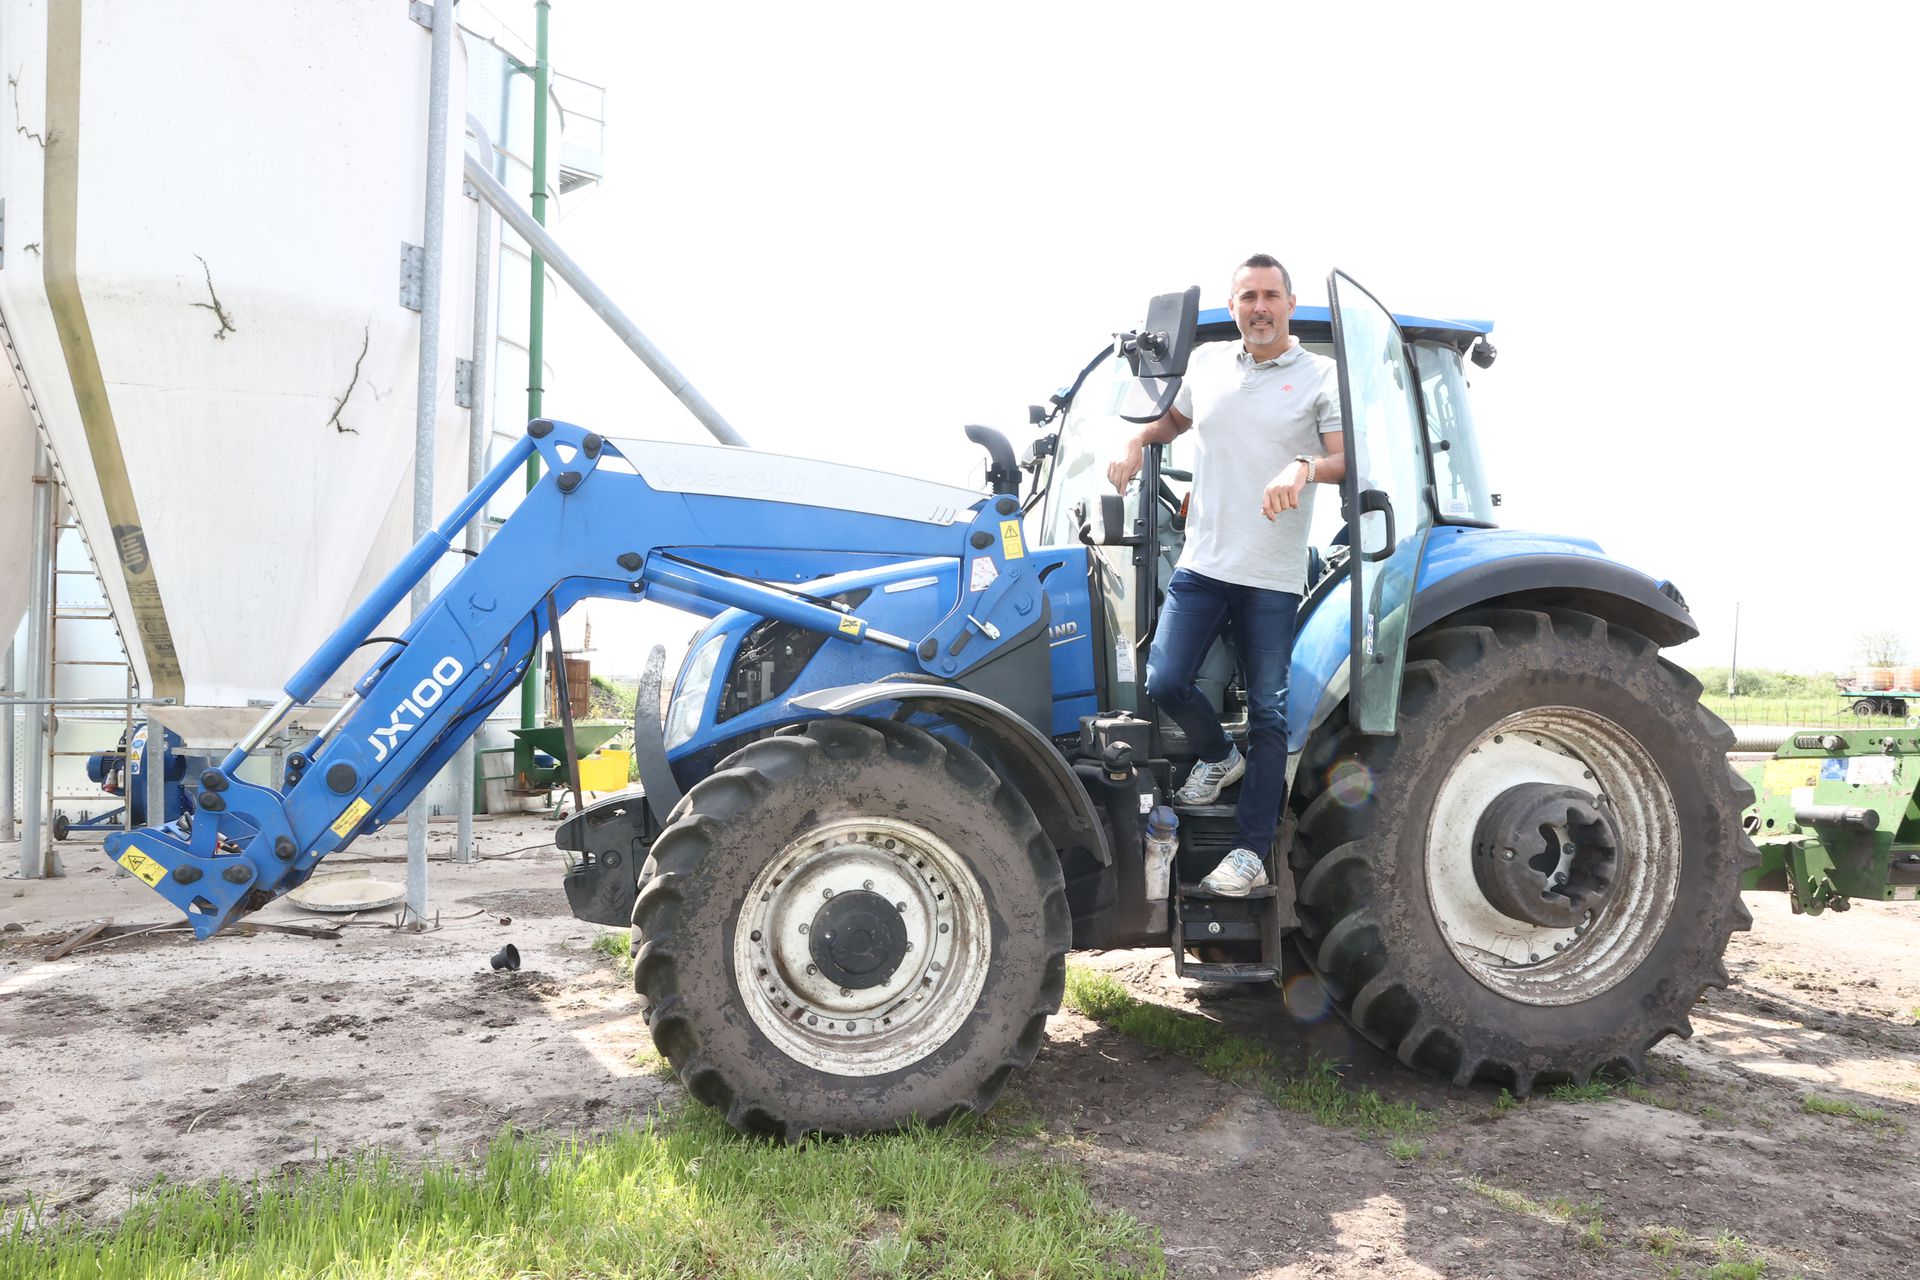 Ha kell, traktorba ülve dolgozik a legendás pólós /Fotó: Pozsonyi Zita